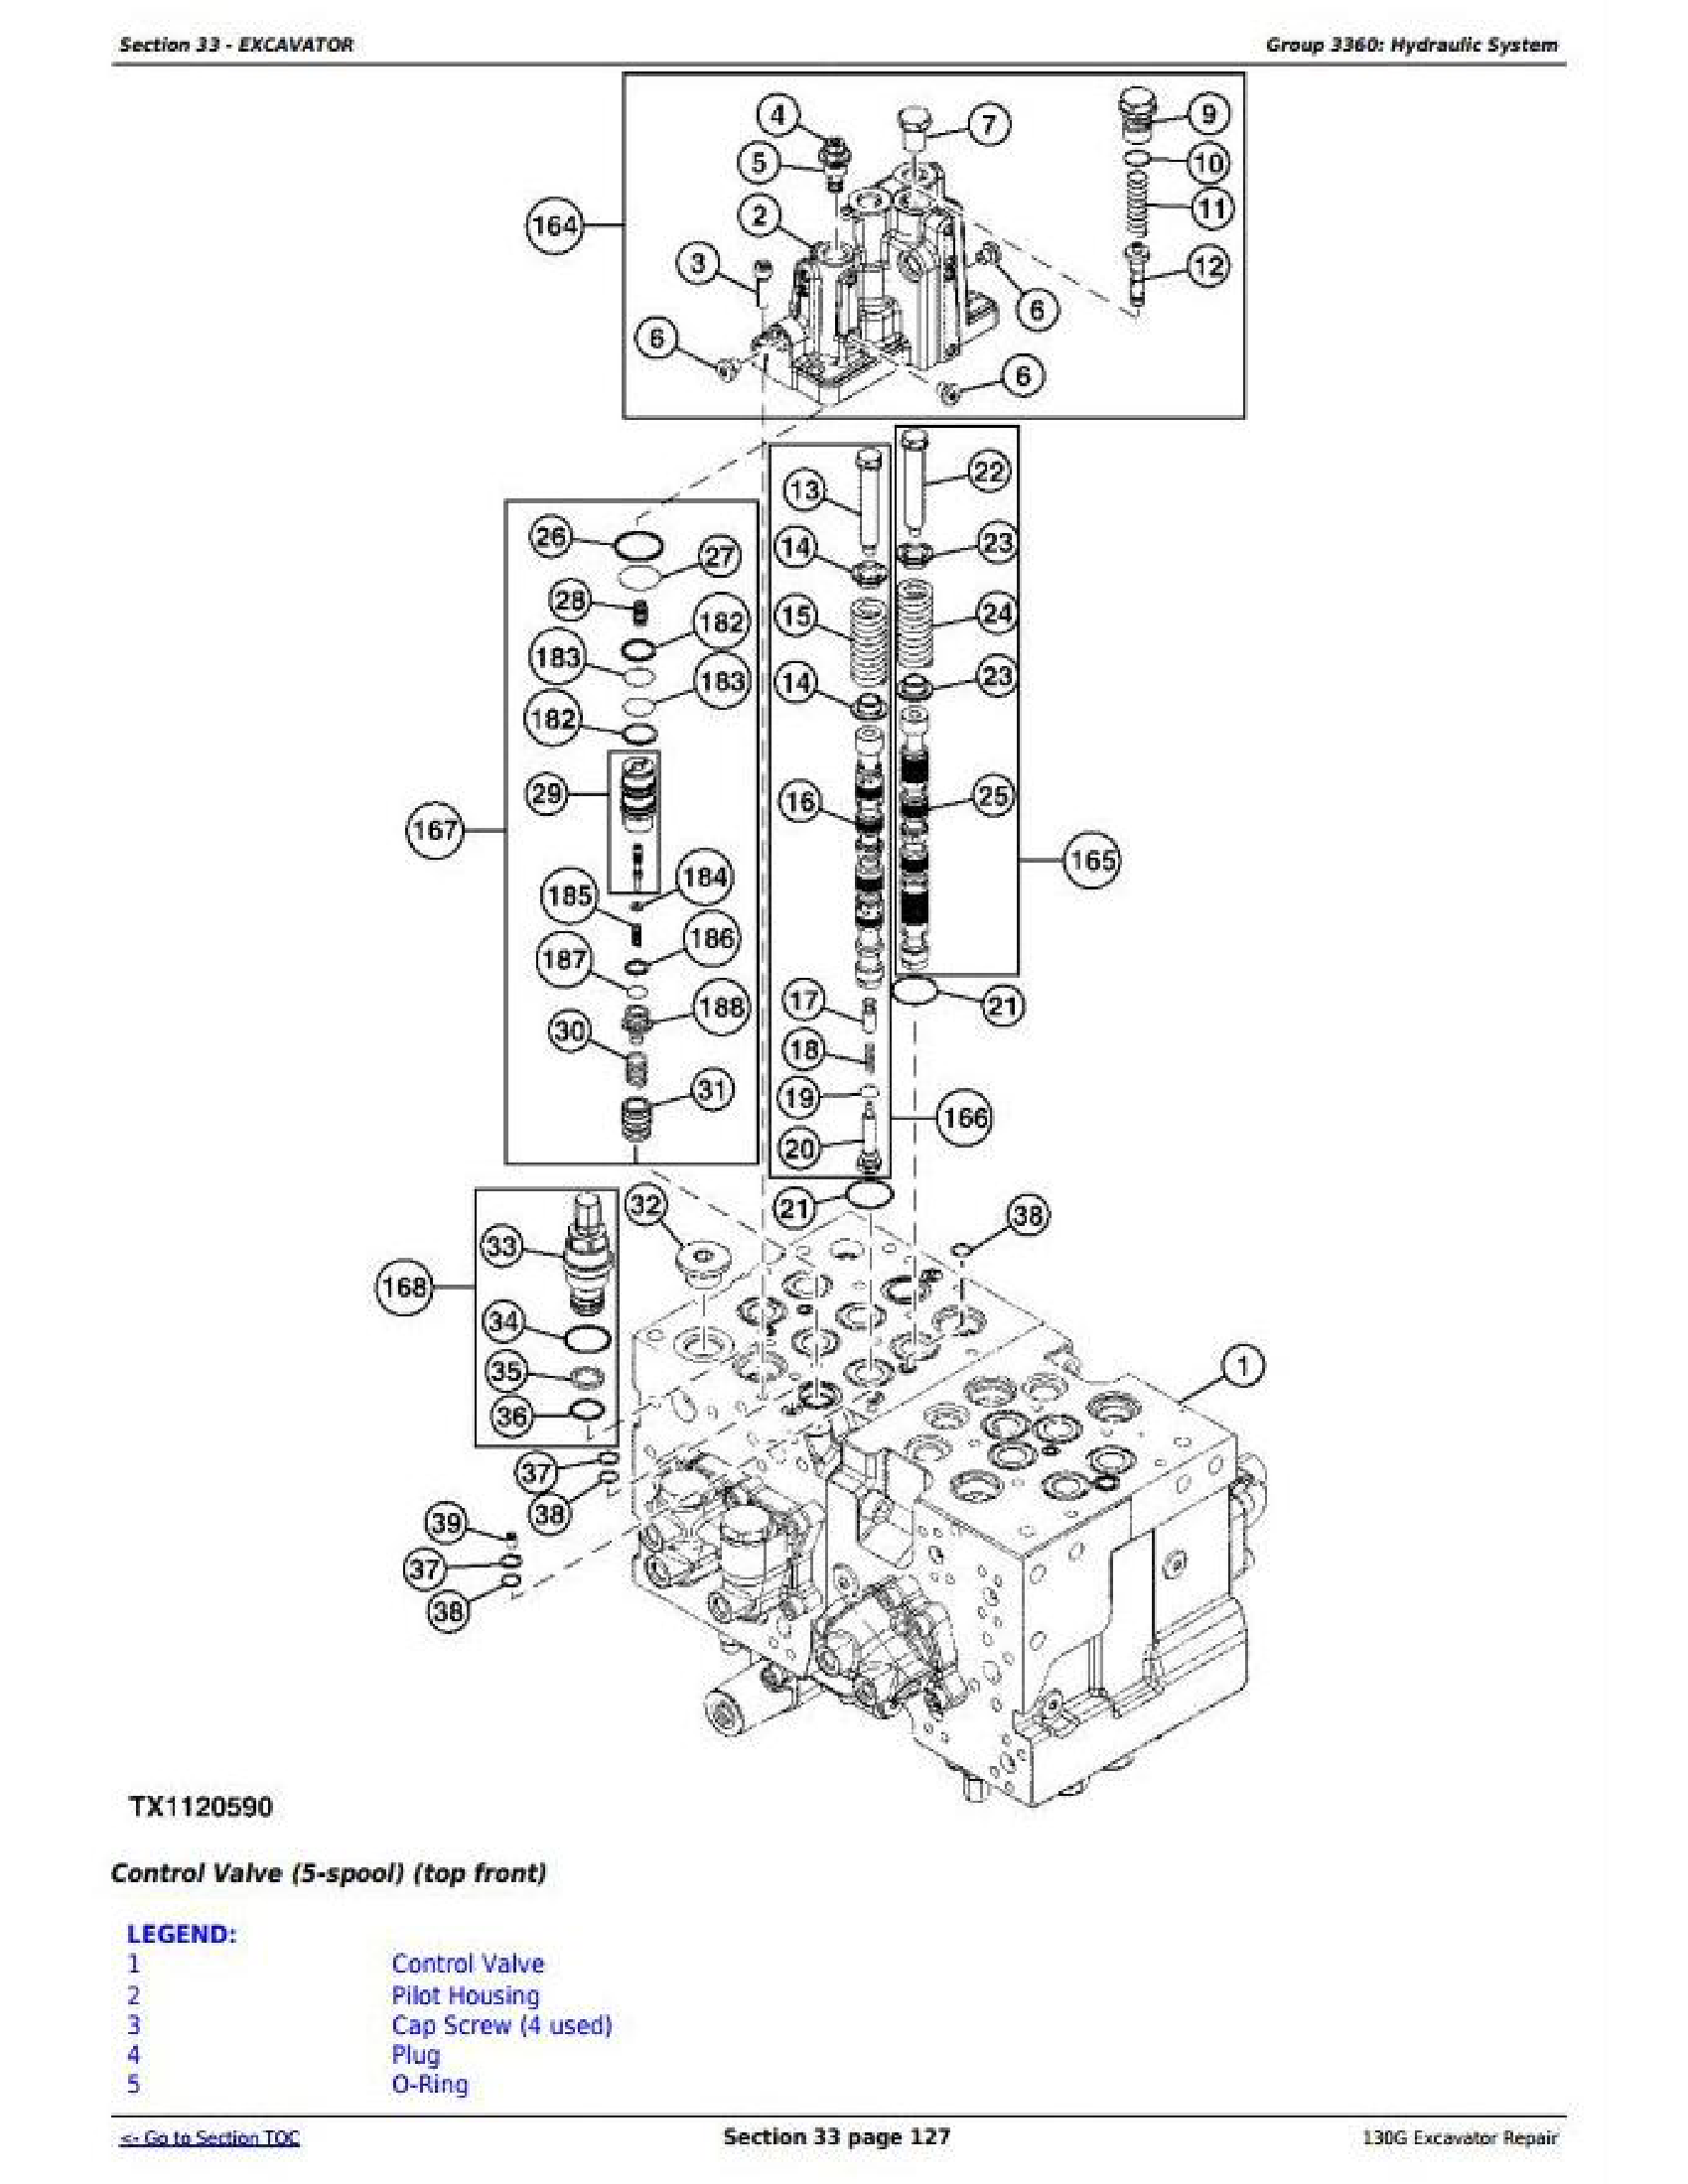 John Deere 710J manual pdf